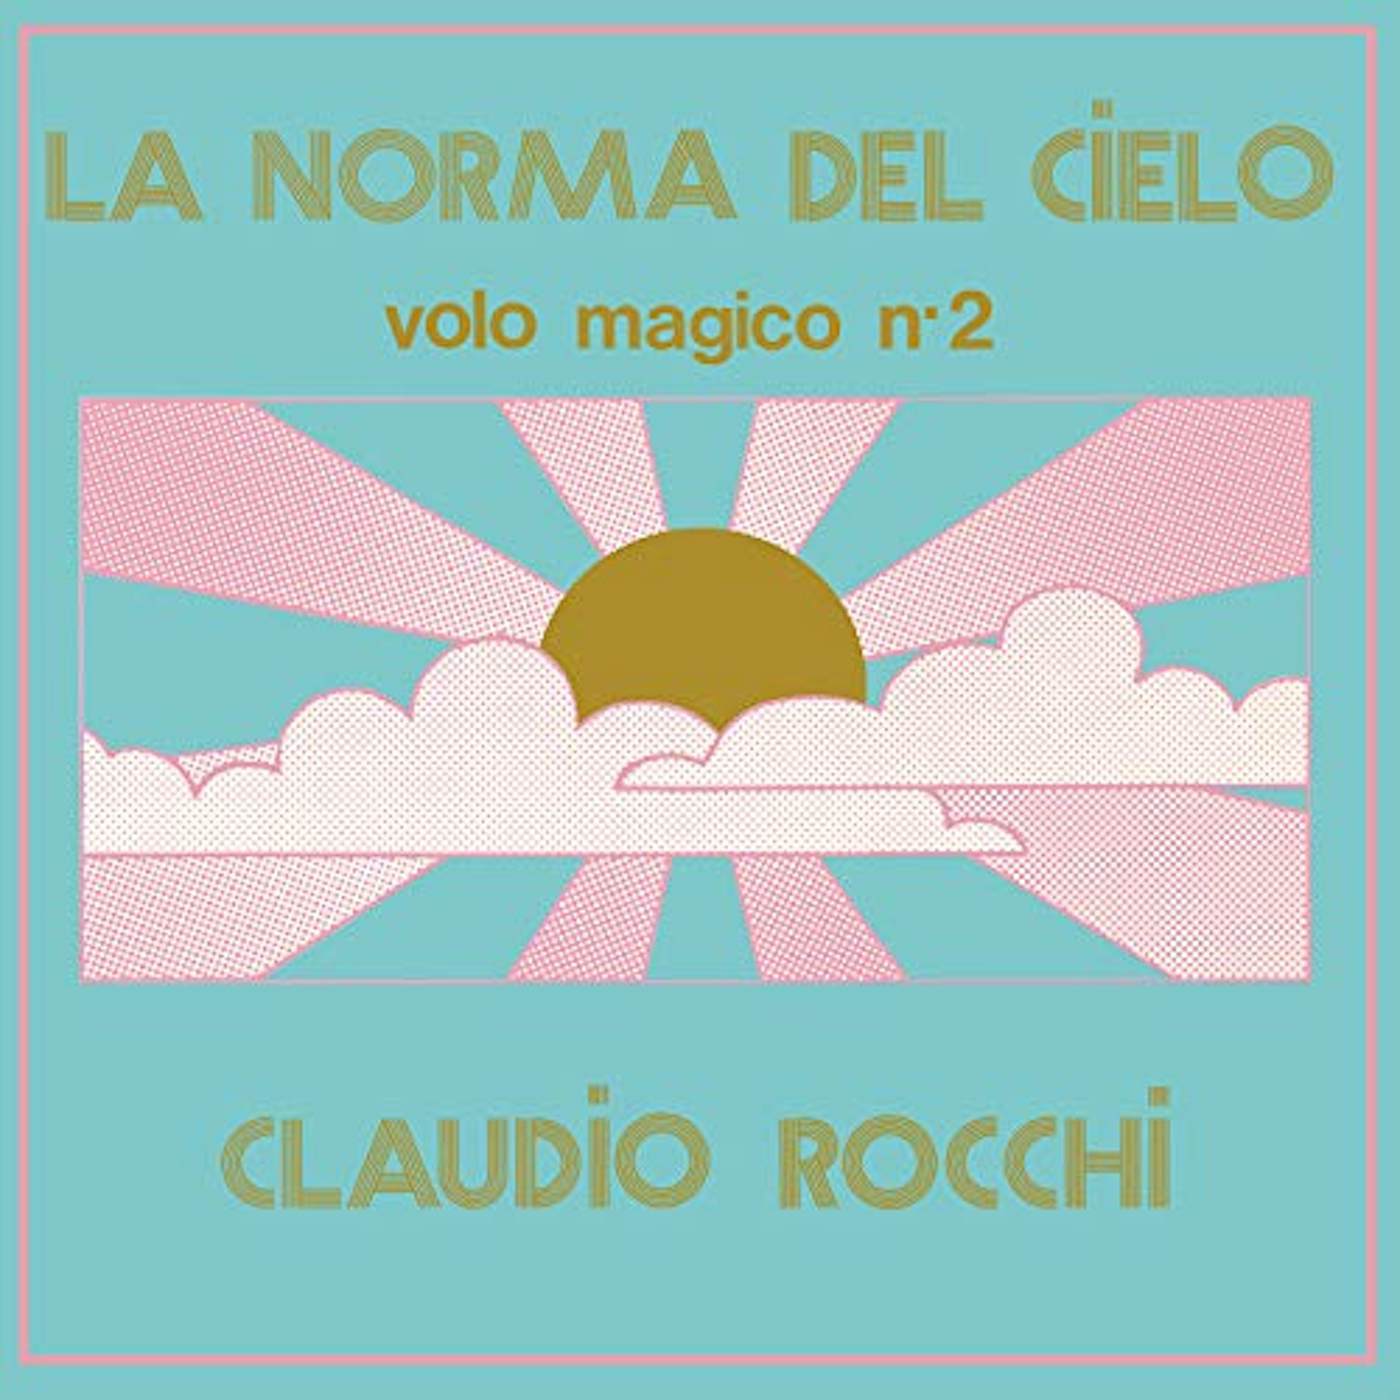 Claudio Rocchi LA NORMA DEL CIELO (VOLO MAGICO N2) Vinyl Record